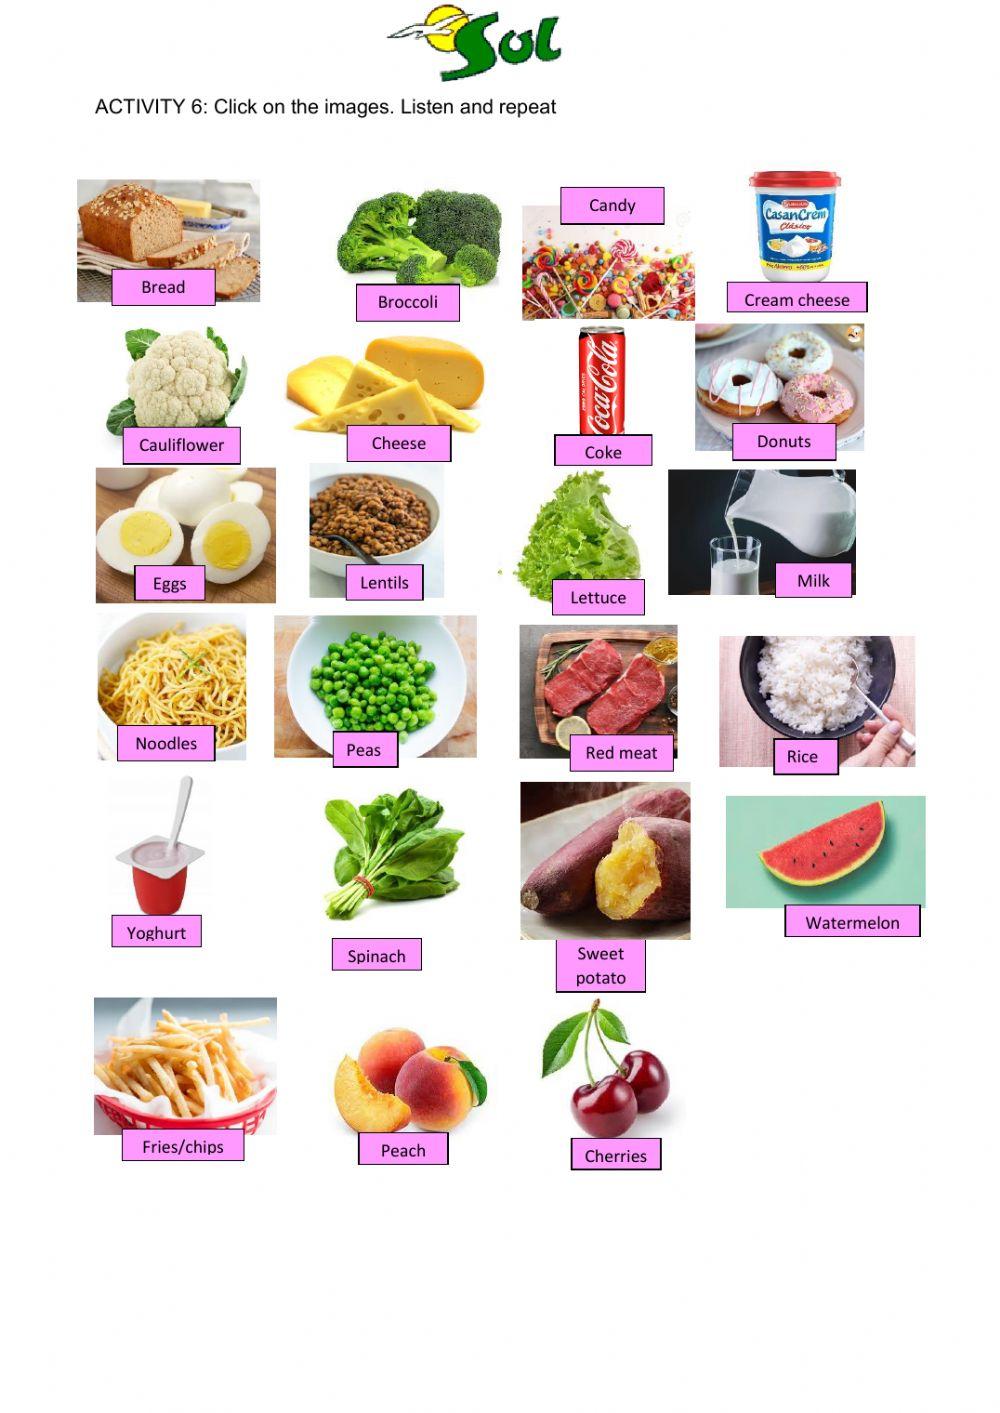 Healthy eating - food